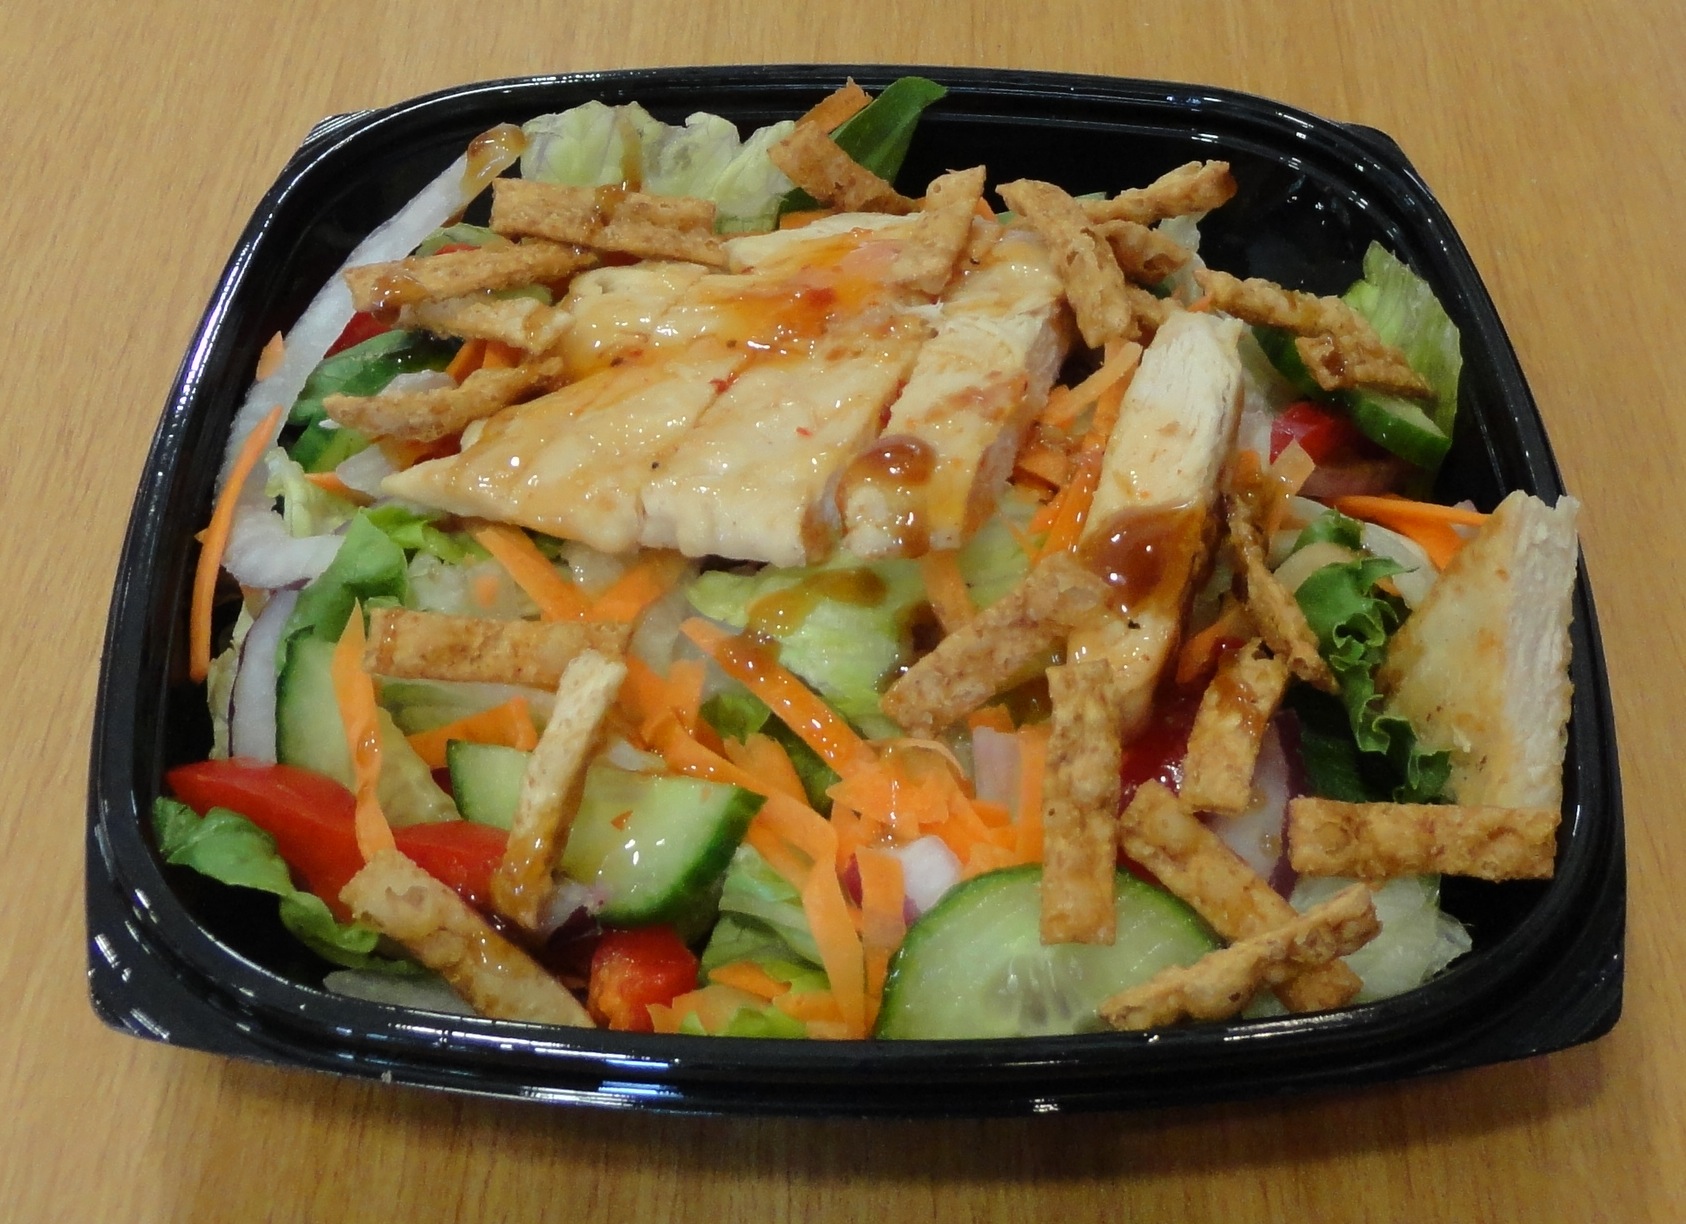 Mcdonalds - Spicy Thai Chicken Salad W/Dressing